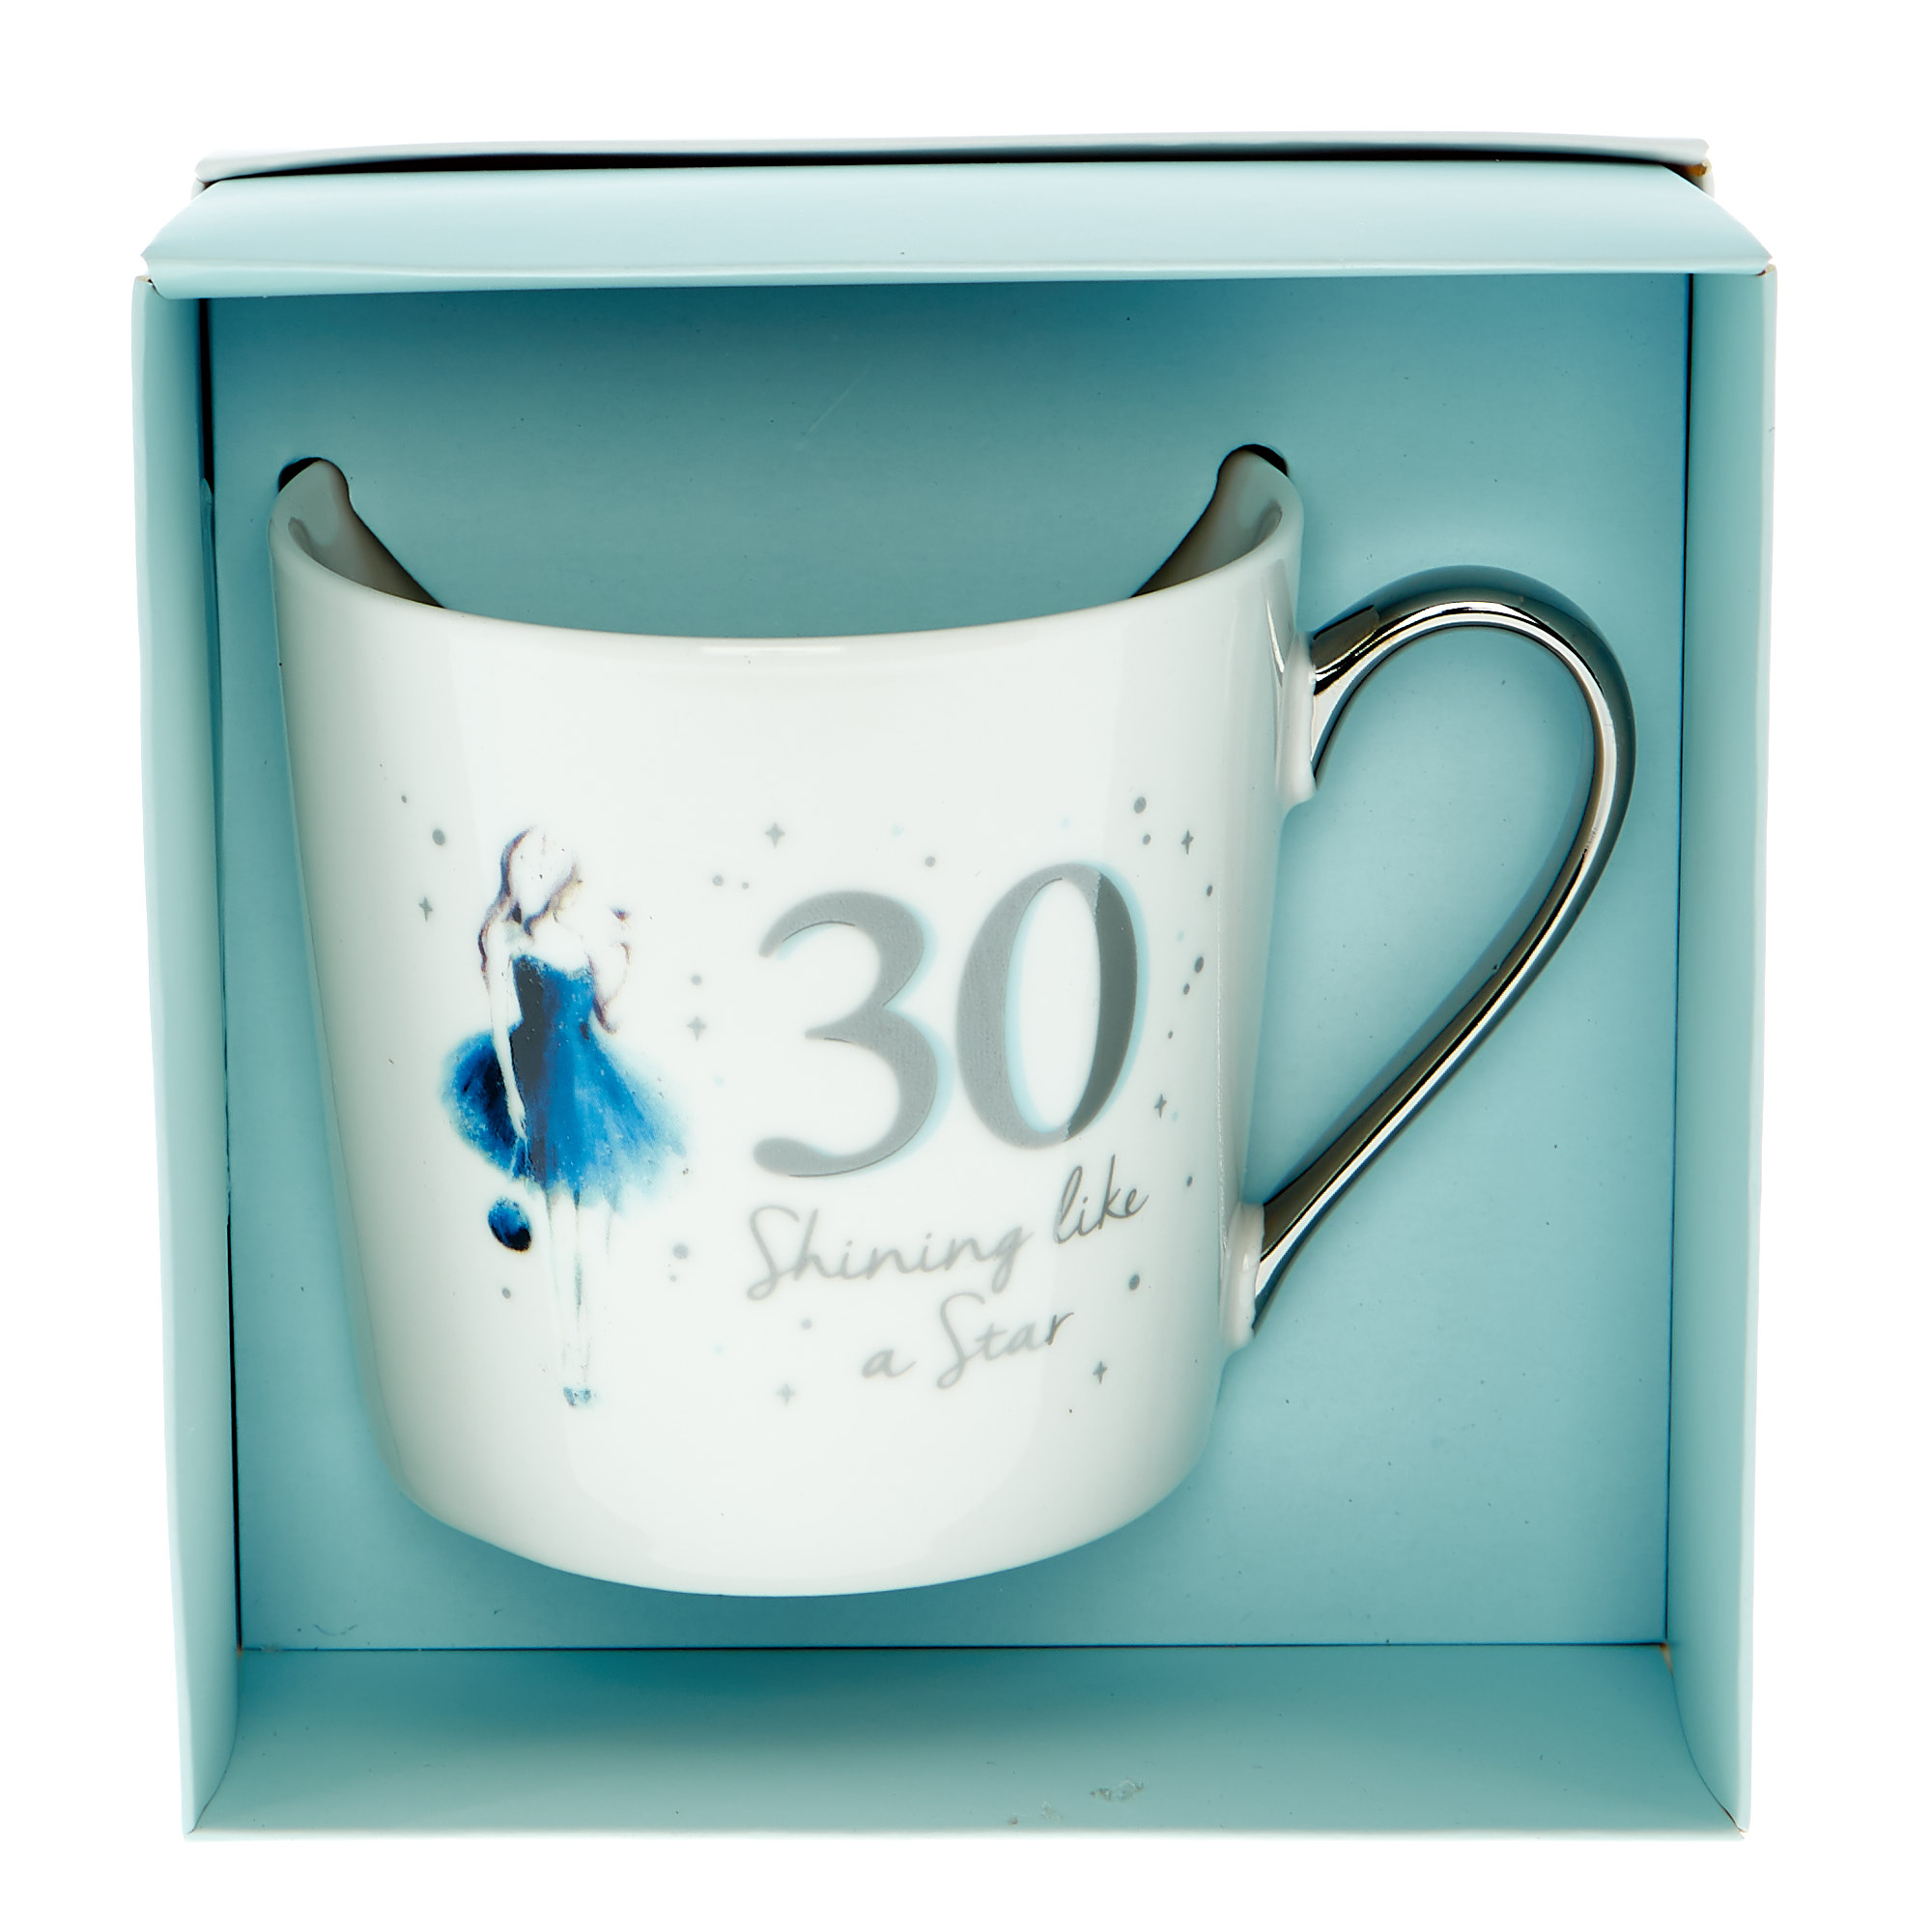 30th Birthday Mug In A Box - Shining Like A Star